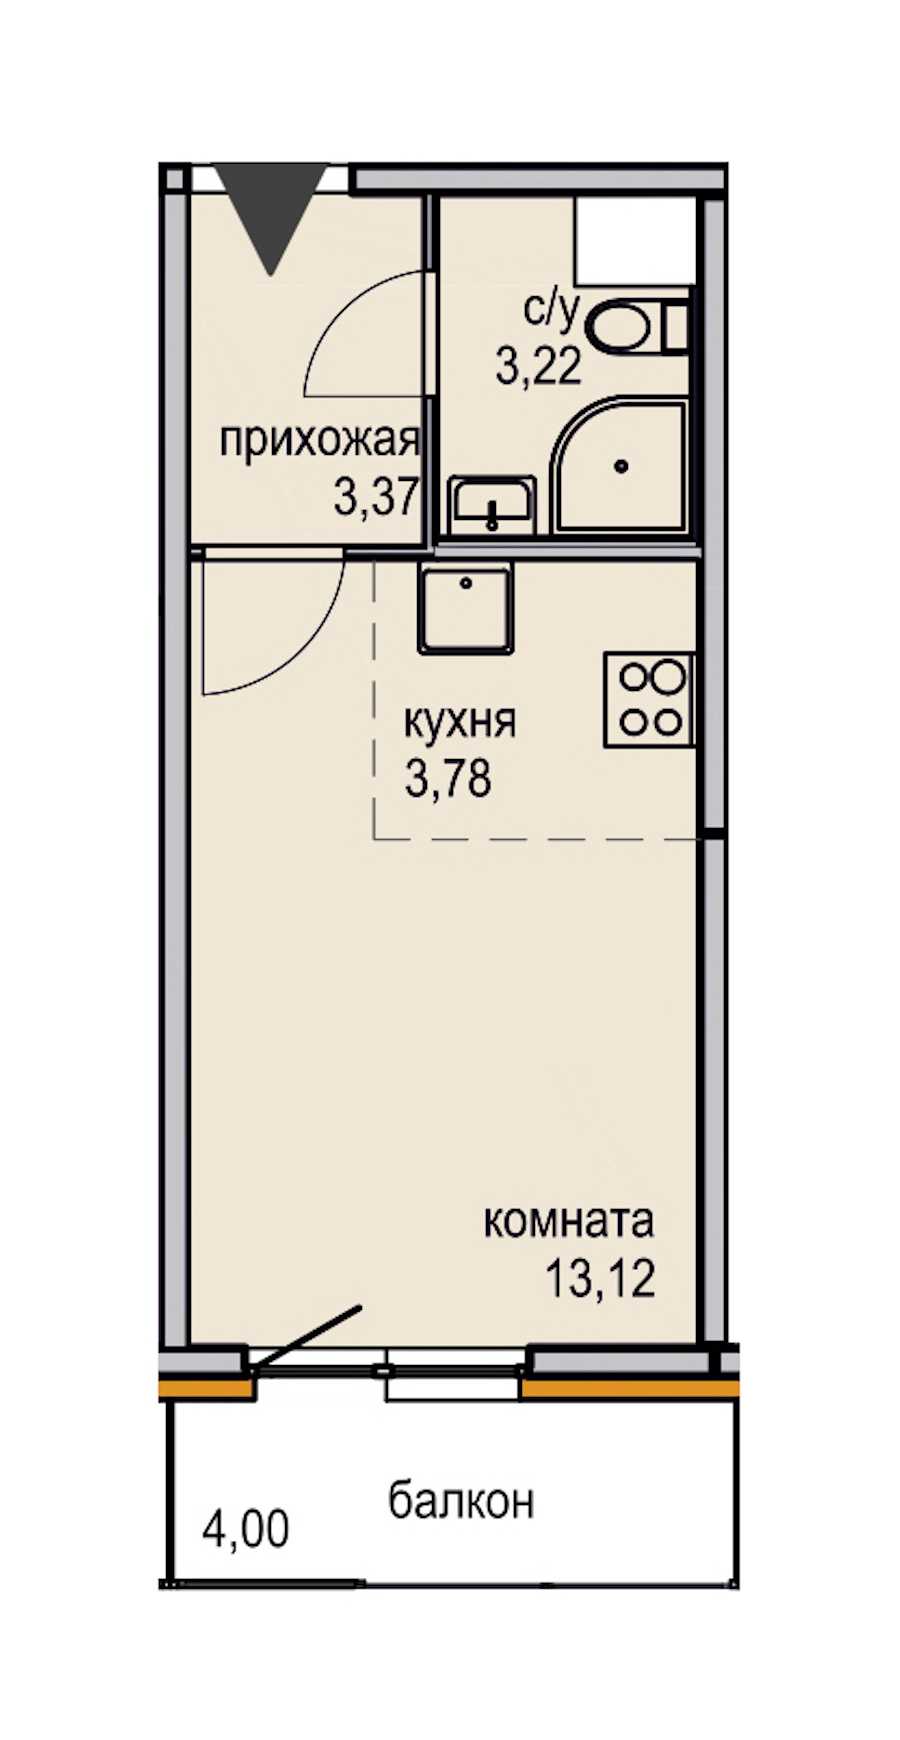 Студия в ЮИТ: площадь 23.49 м2 , этаж: 7 – купить в Санкт-Петербурге